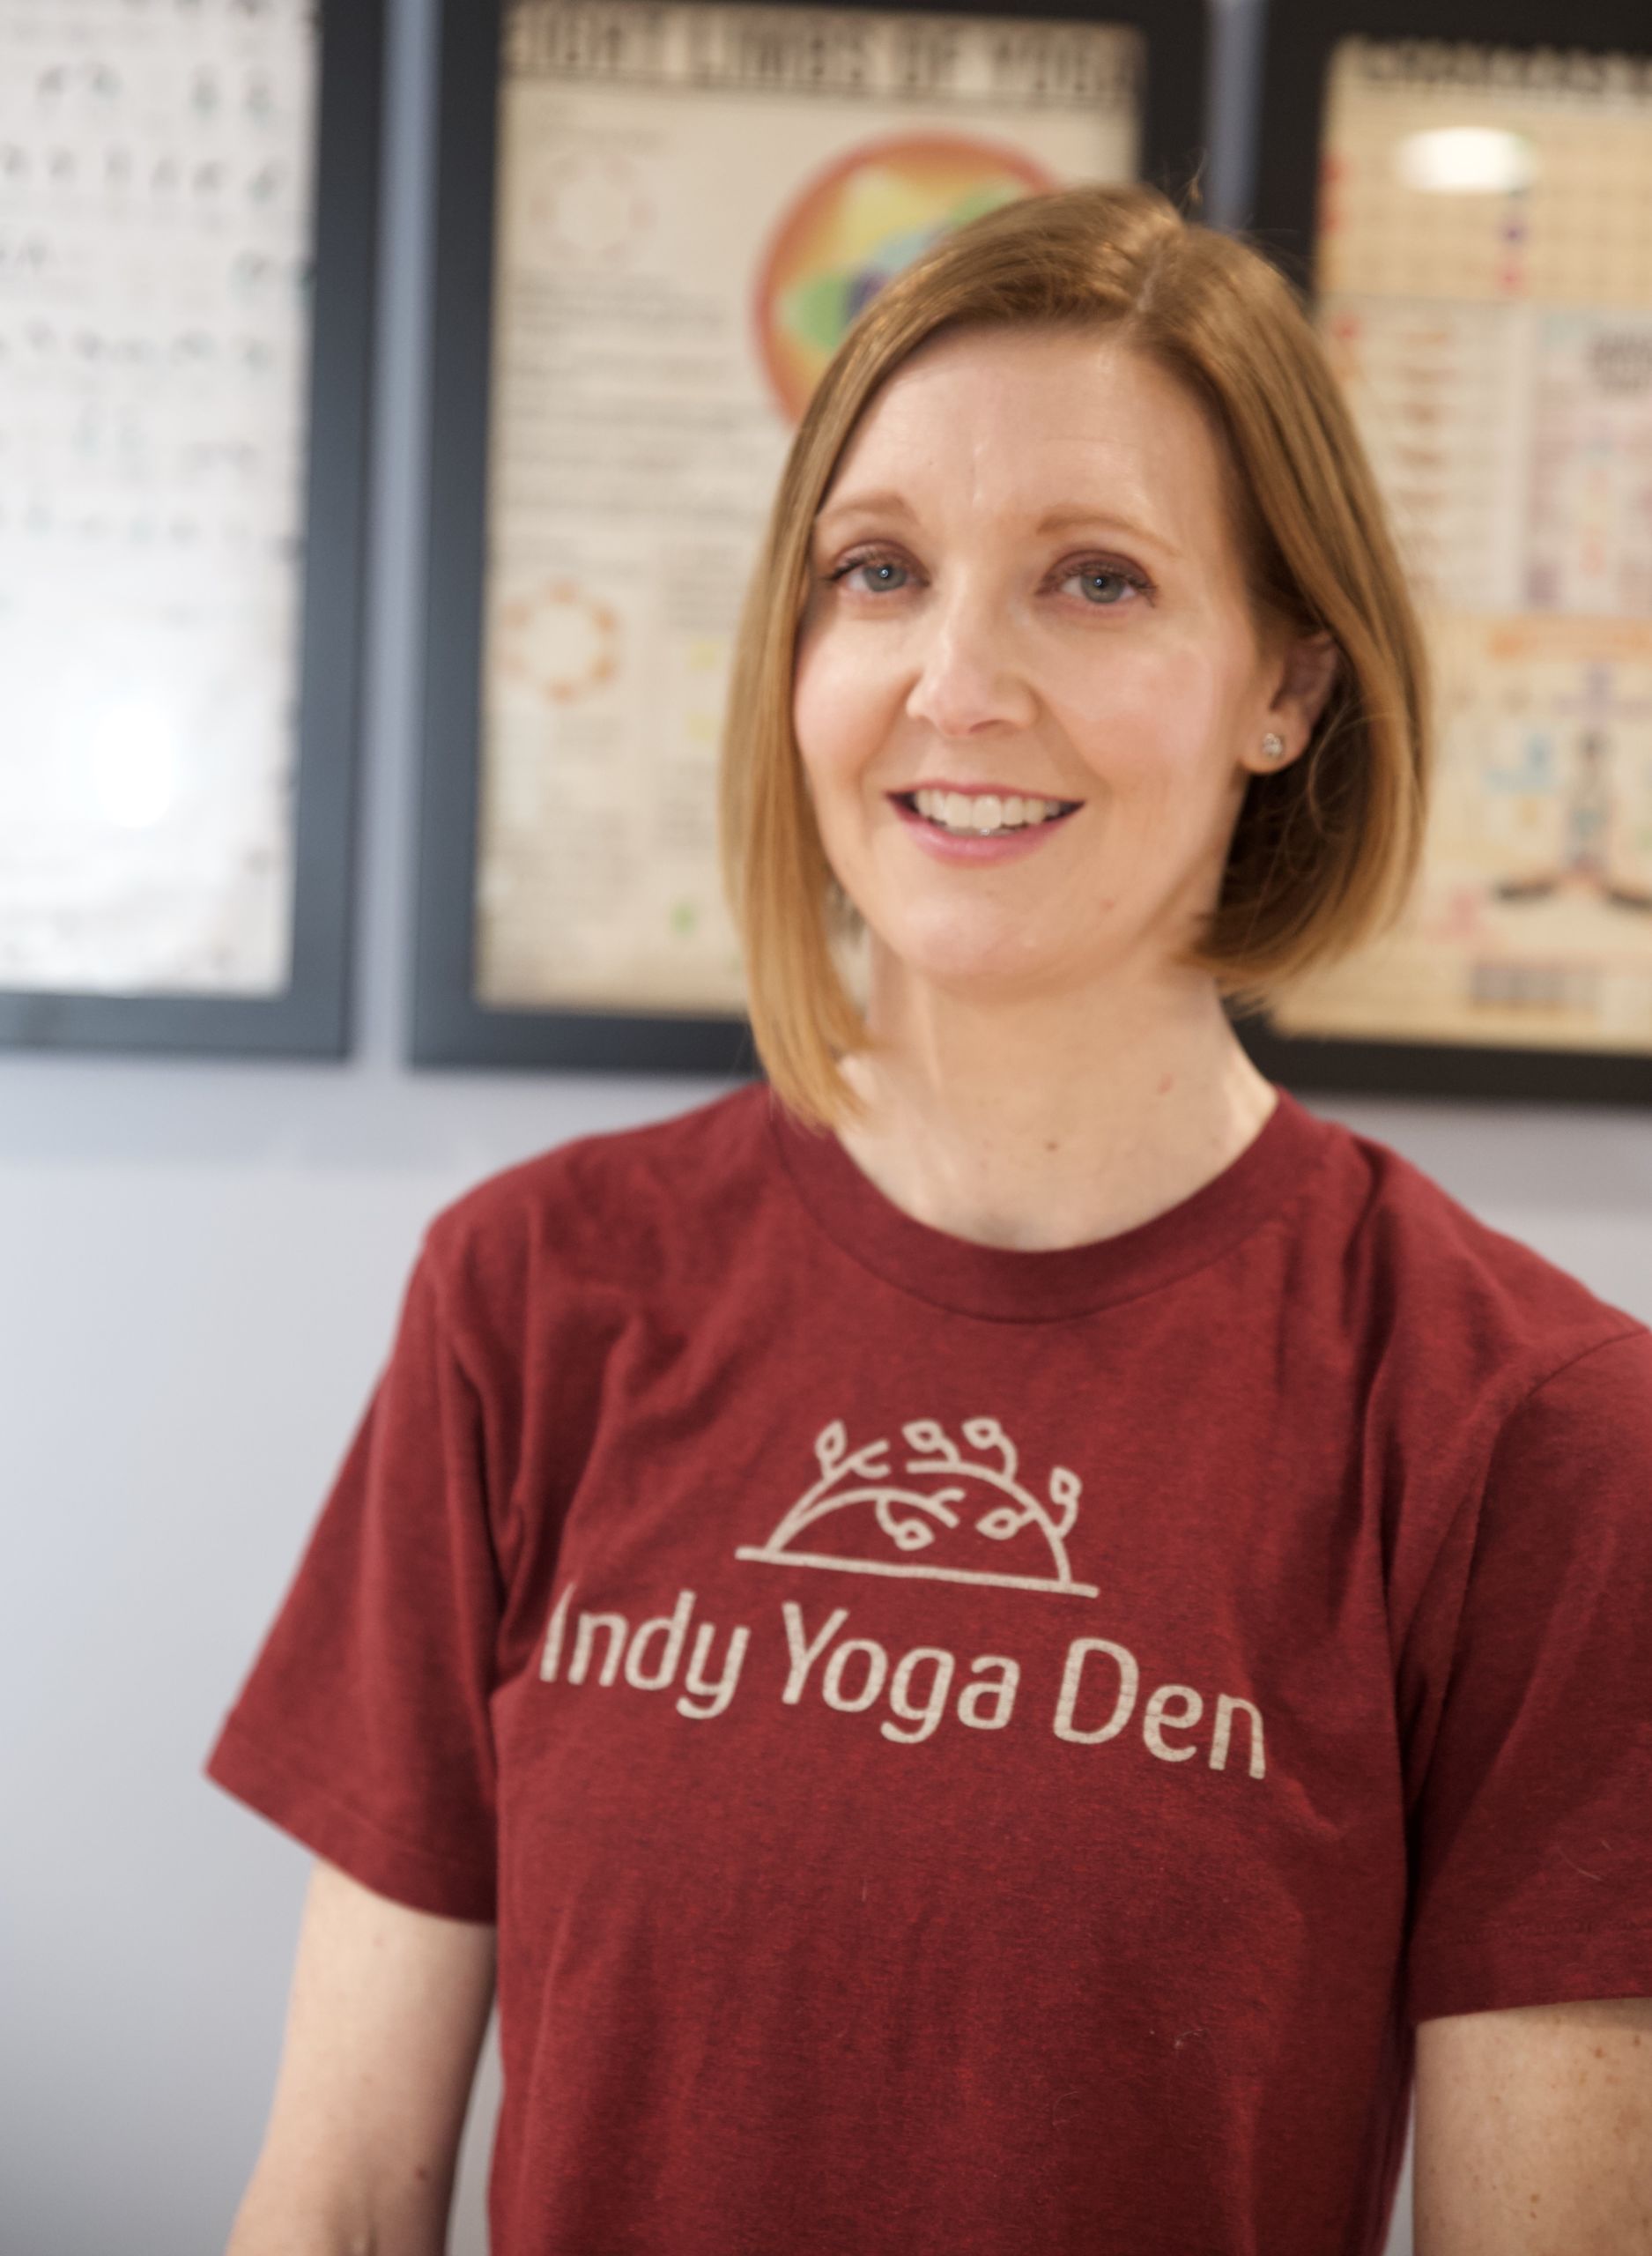 Jenny Siminski of Indy Yoga Den